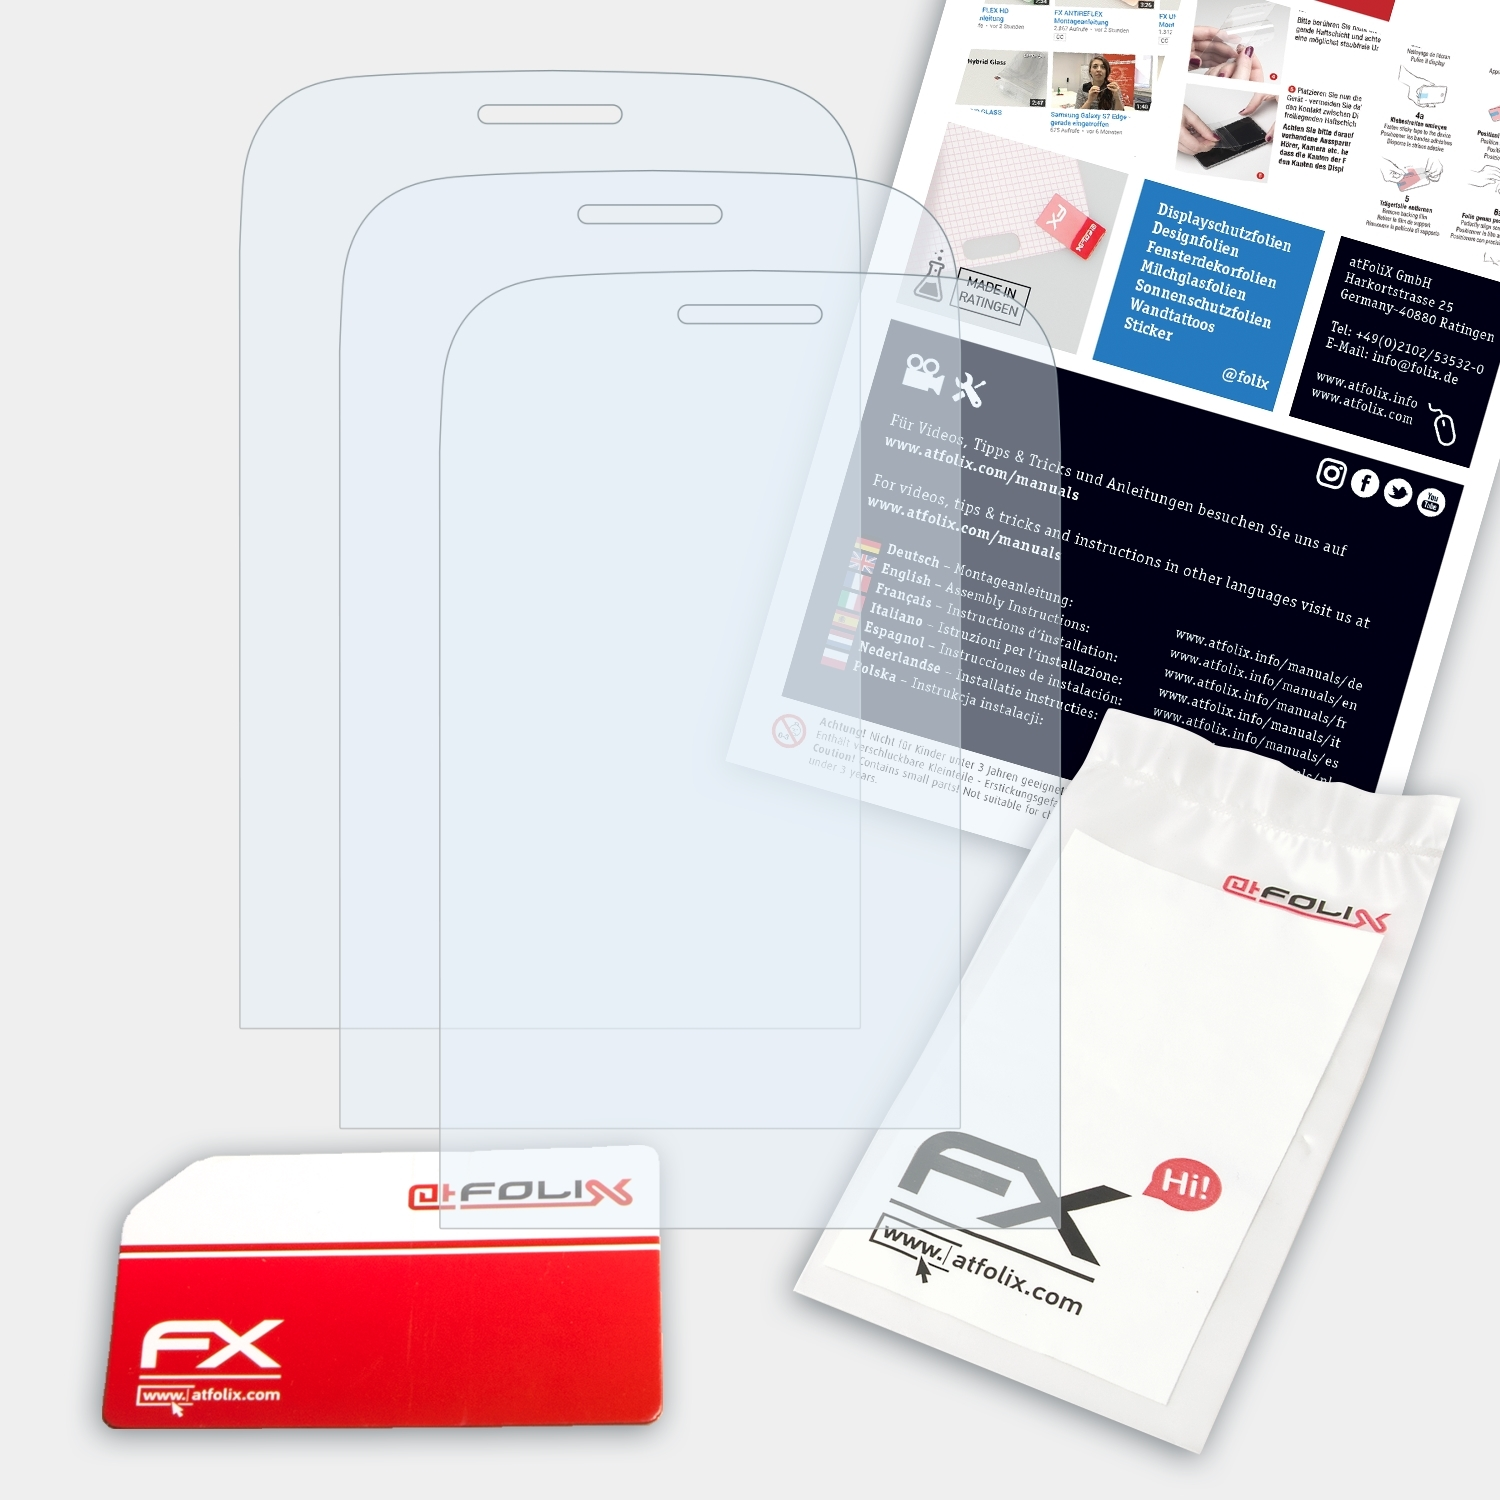 ATFOLIX 3x FX-Clear Displayschutz(für Nokia Asha 203)